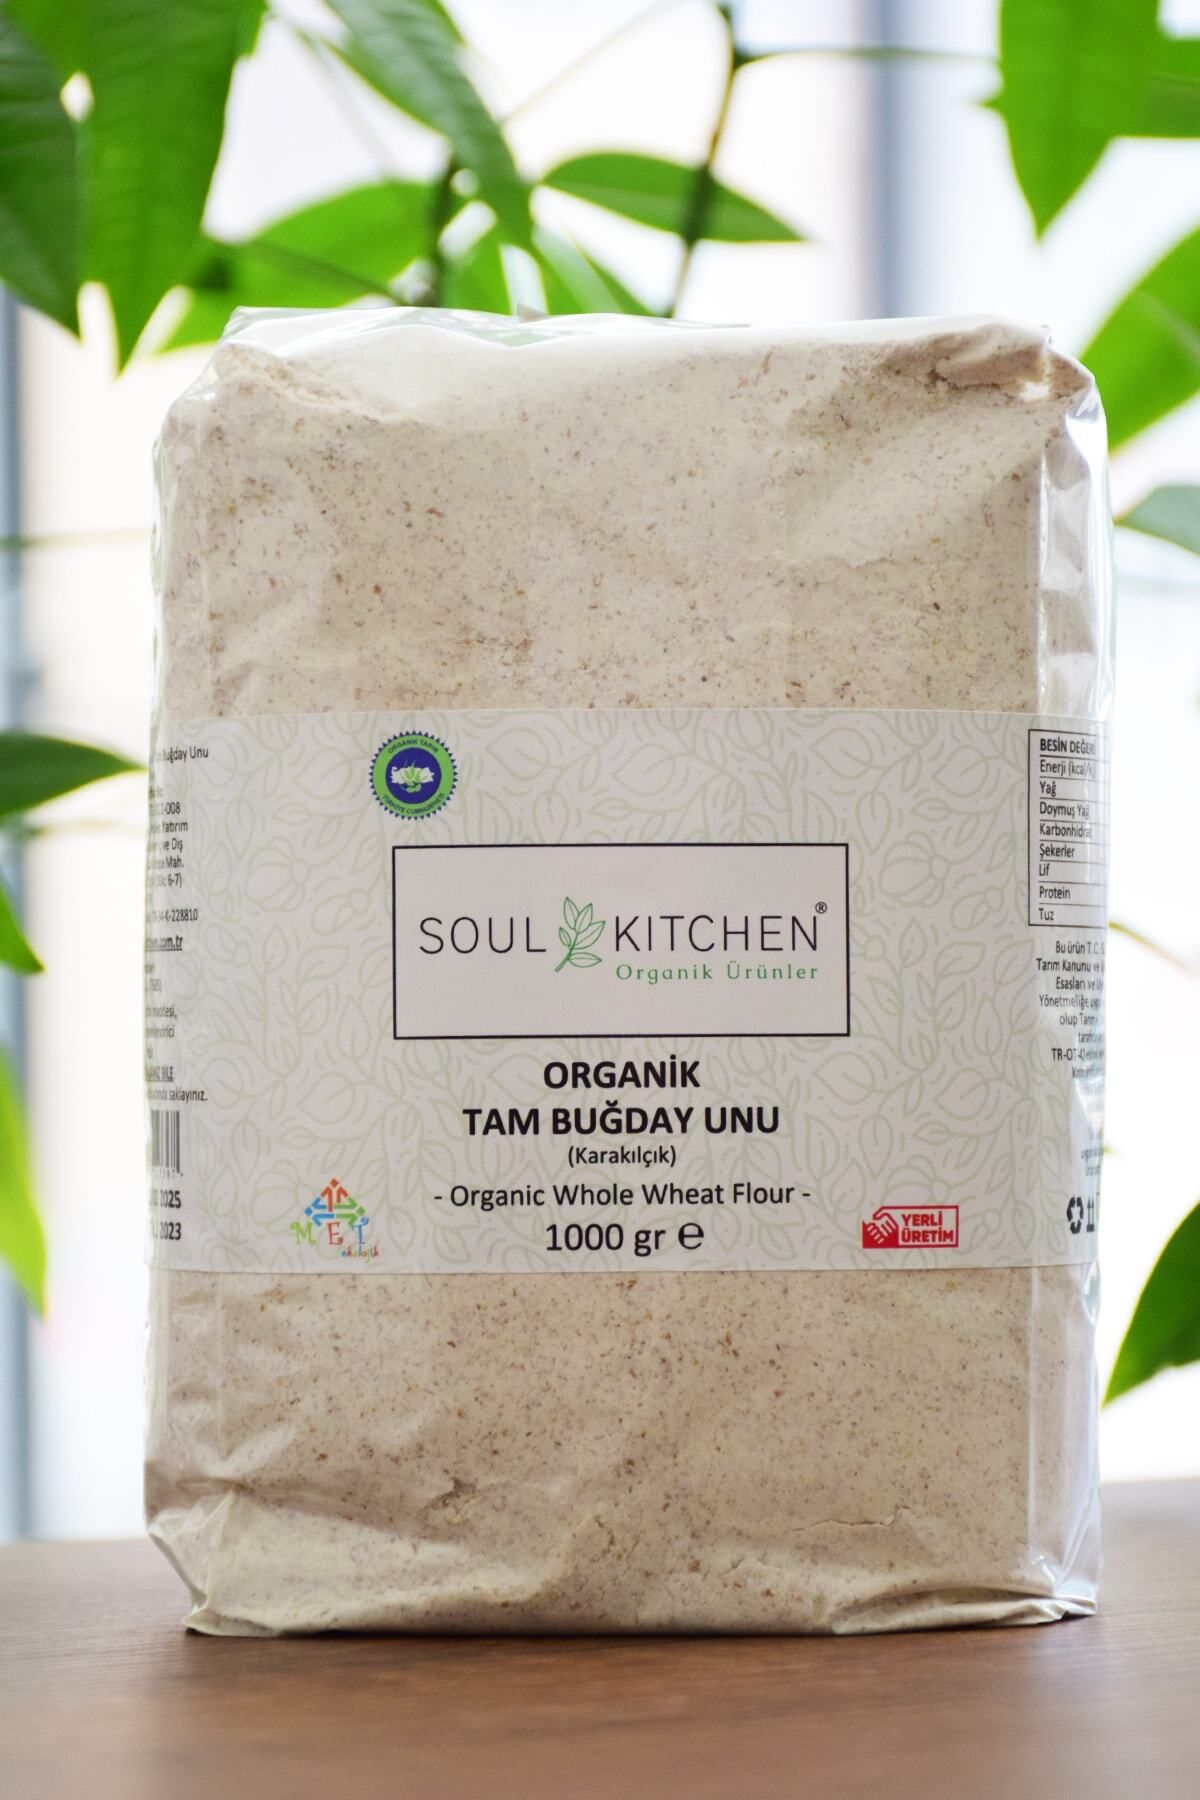 Soul Kitchen Organik Ürünler Organik Tam Buğday Unu (karakılçık) 1000gr